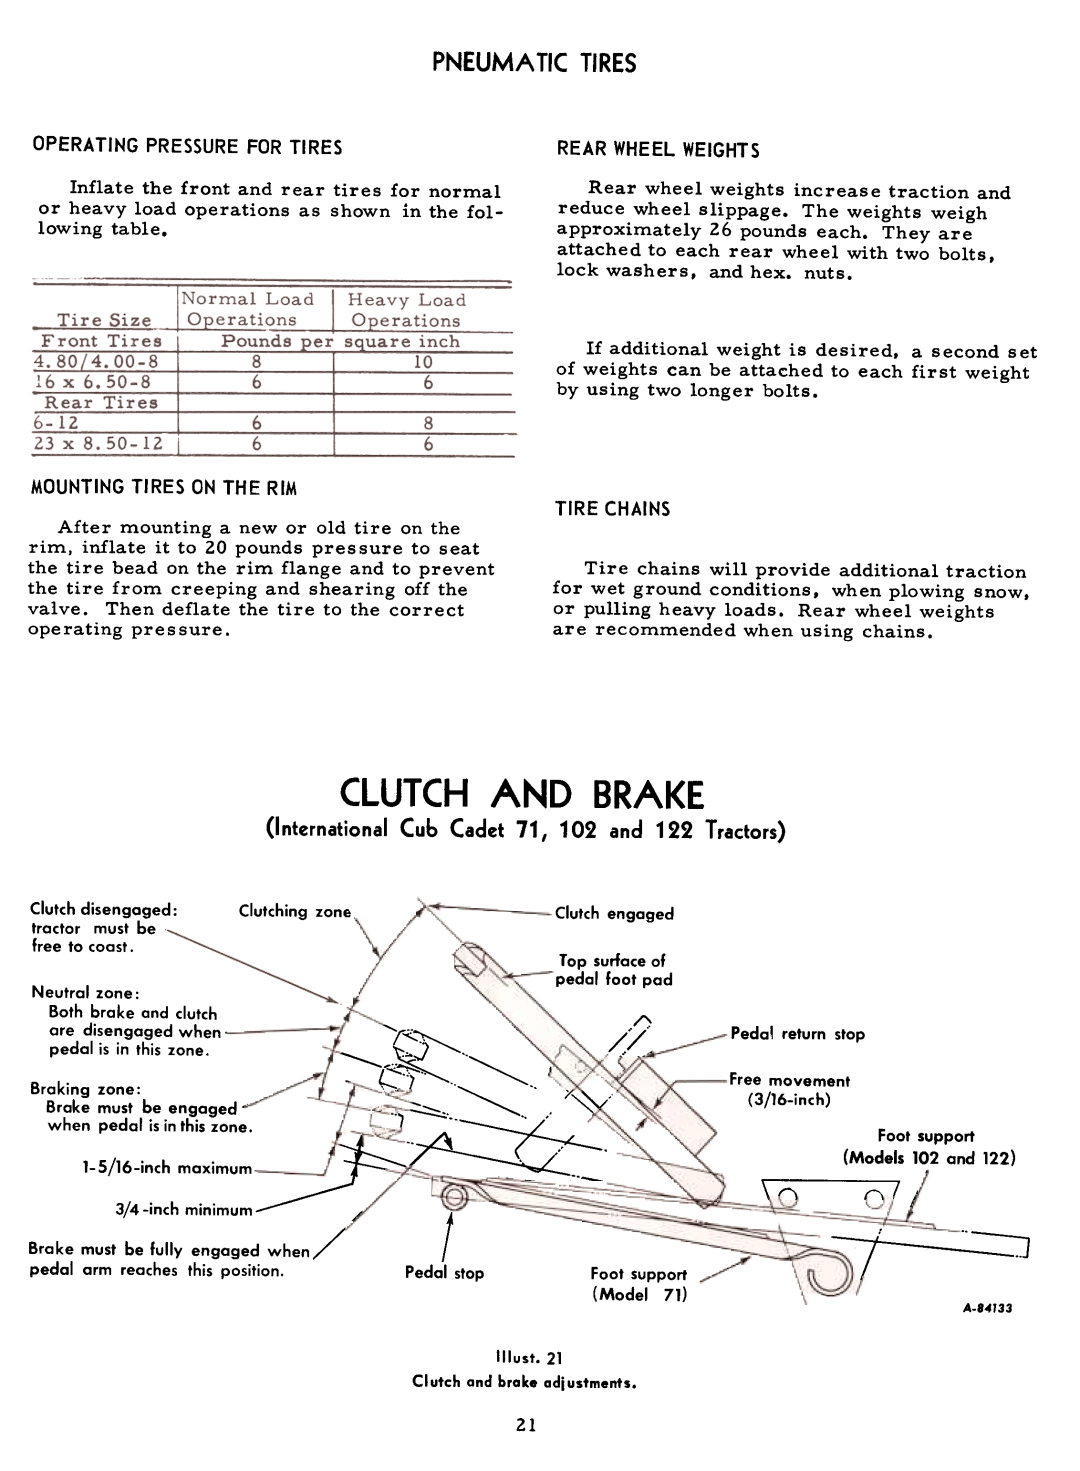 Cub Cadet 71 manual Clutch And Brake, Pneumatictires, ~~===~, t ~.==~, 7~21 